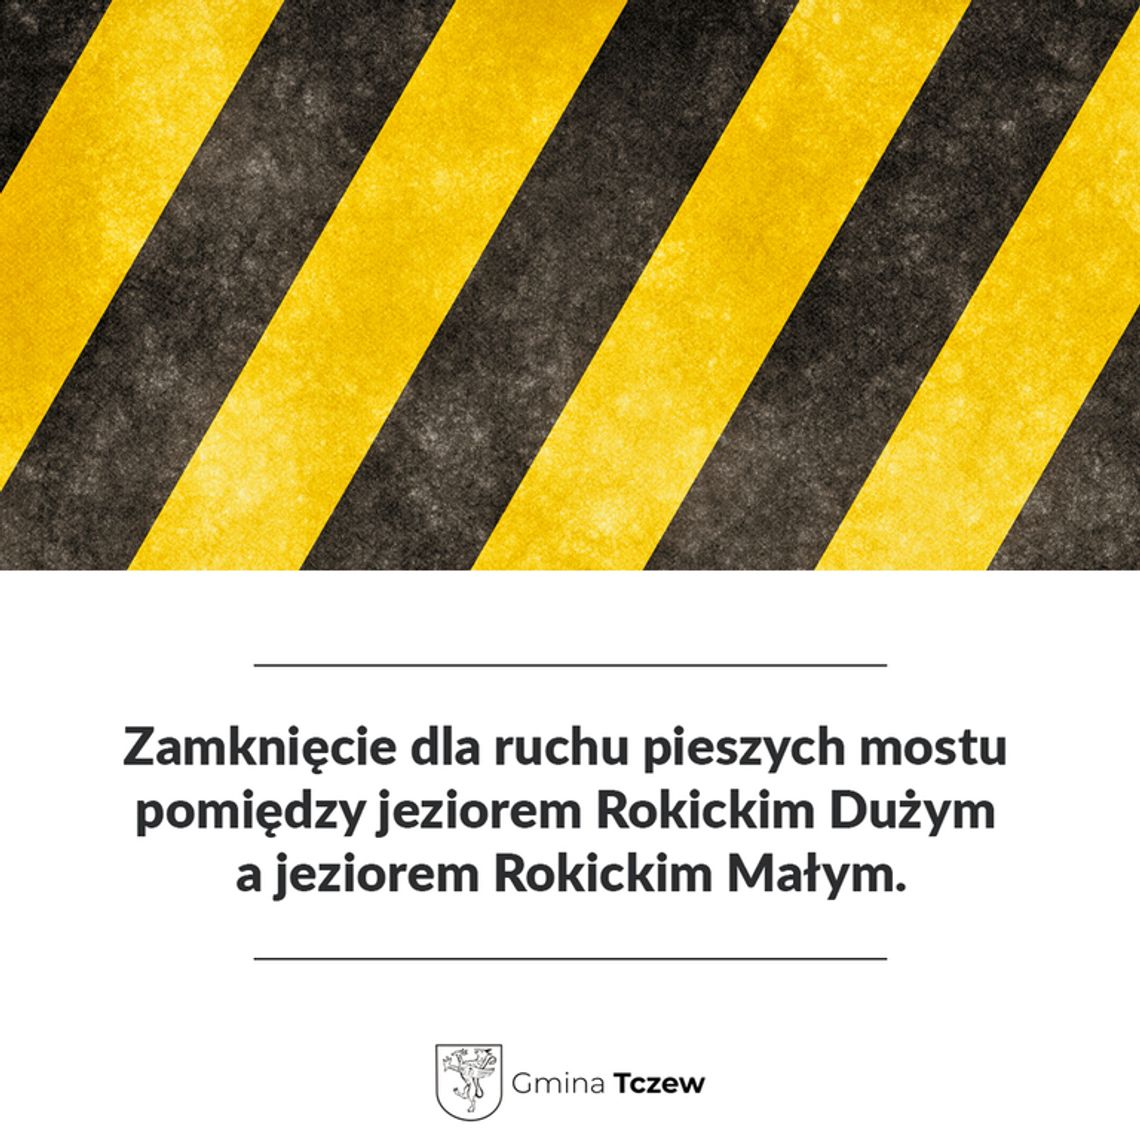 Zamknięcie dla ruchu pieszych mostu pomiędzy jeziorem Rokickim Dużym a jeziorem Rokickim Małym.